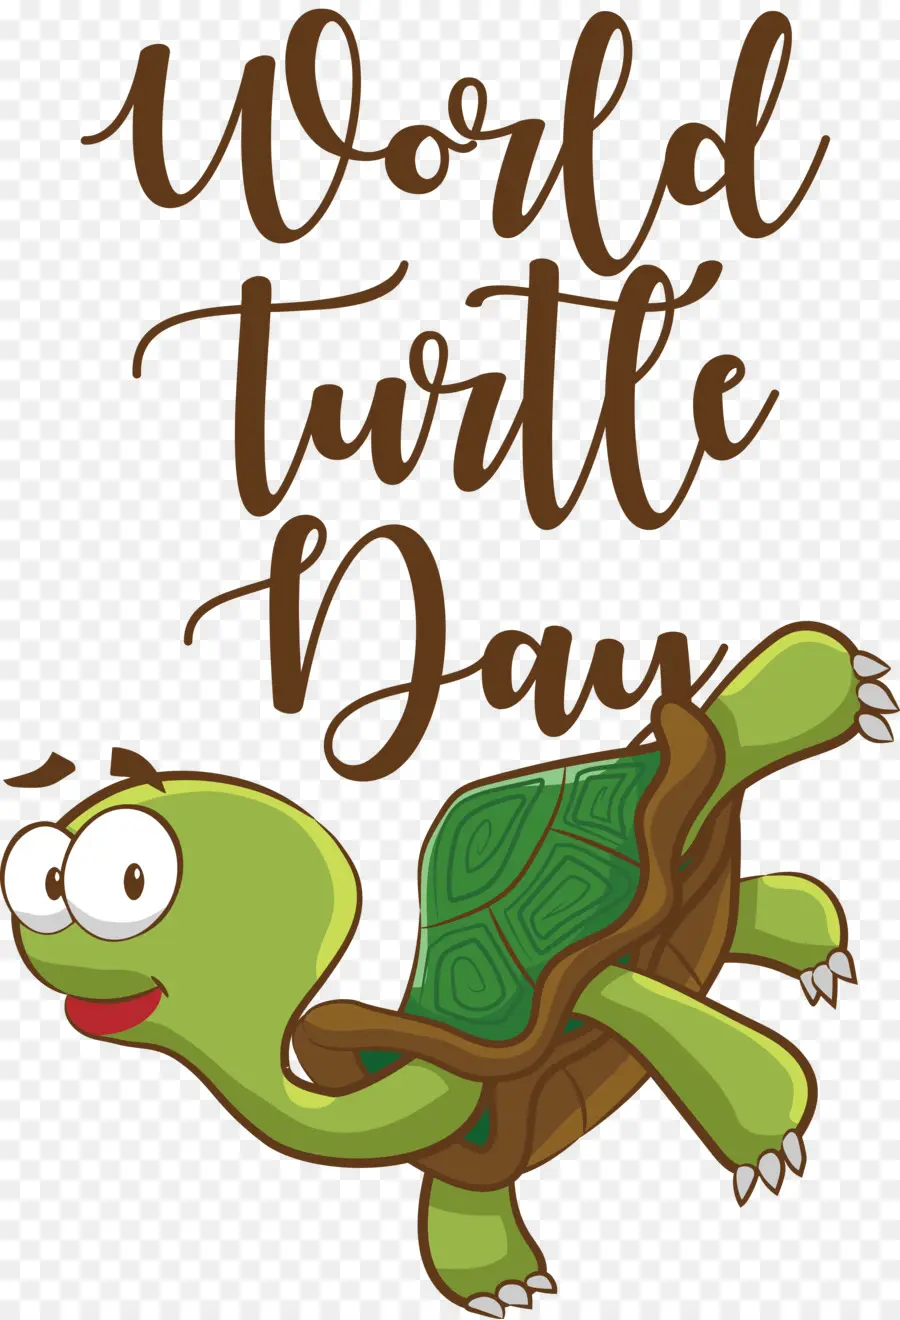 Dünya Kaplumbağa Günü，Kaplumbağa Günü PNG